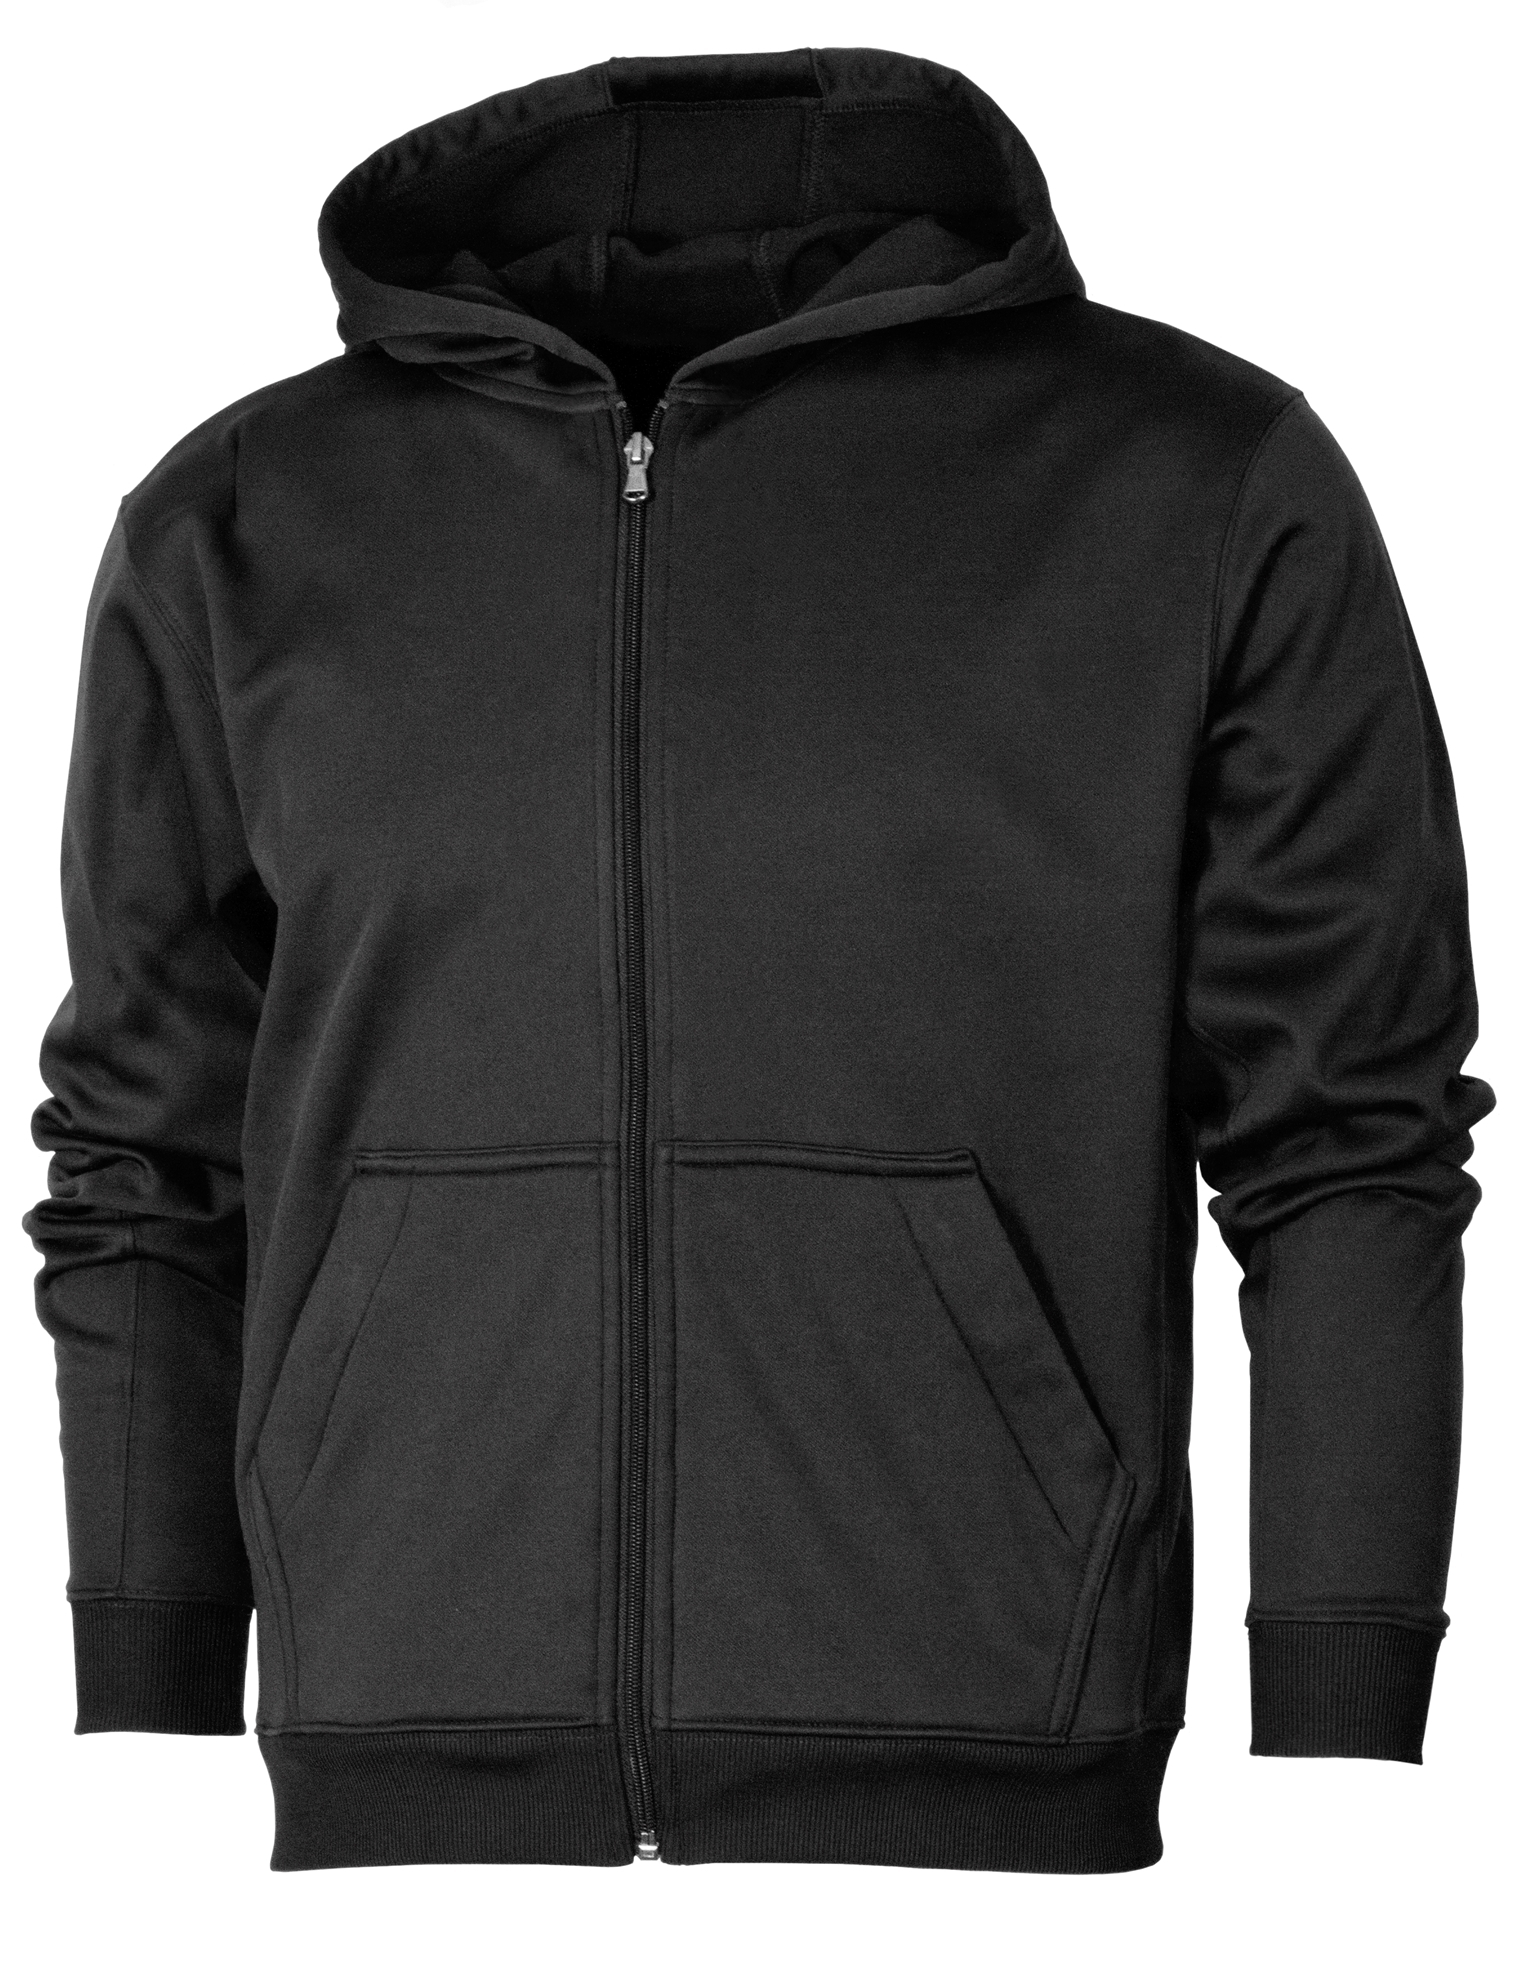 BAW Athletic Wear F160Y - Youth Dry-Tek Full Zip Sweatshirt